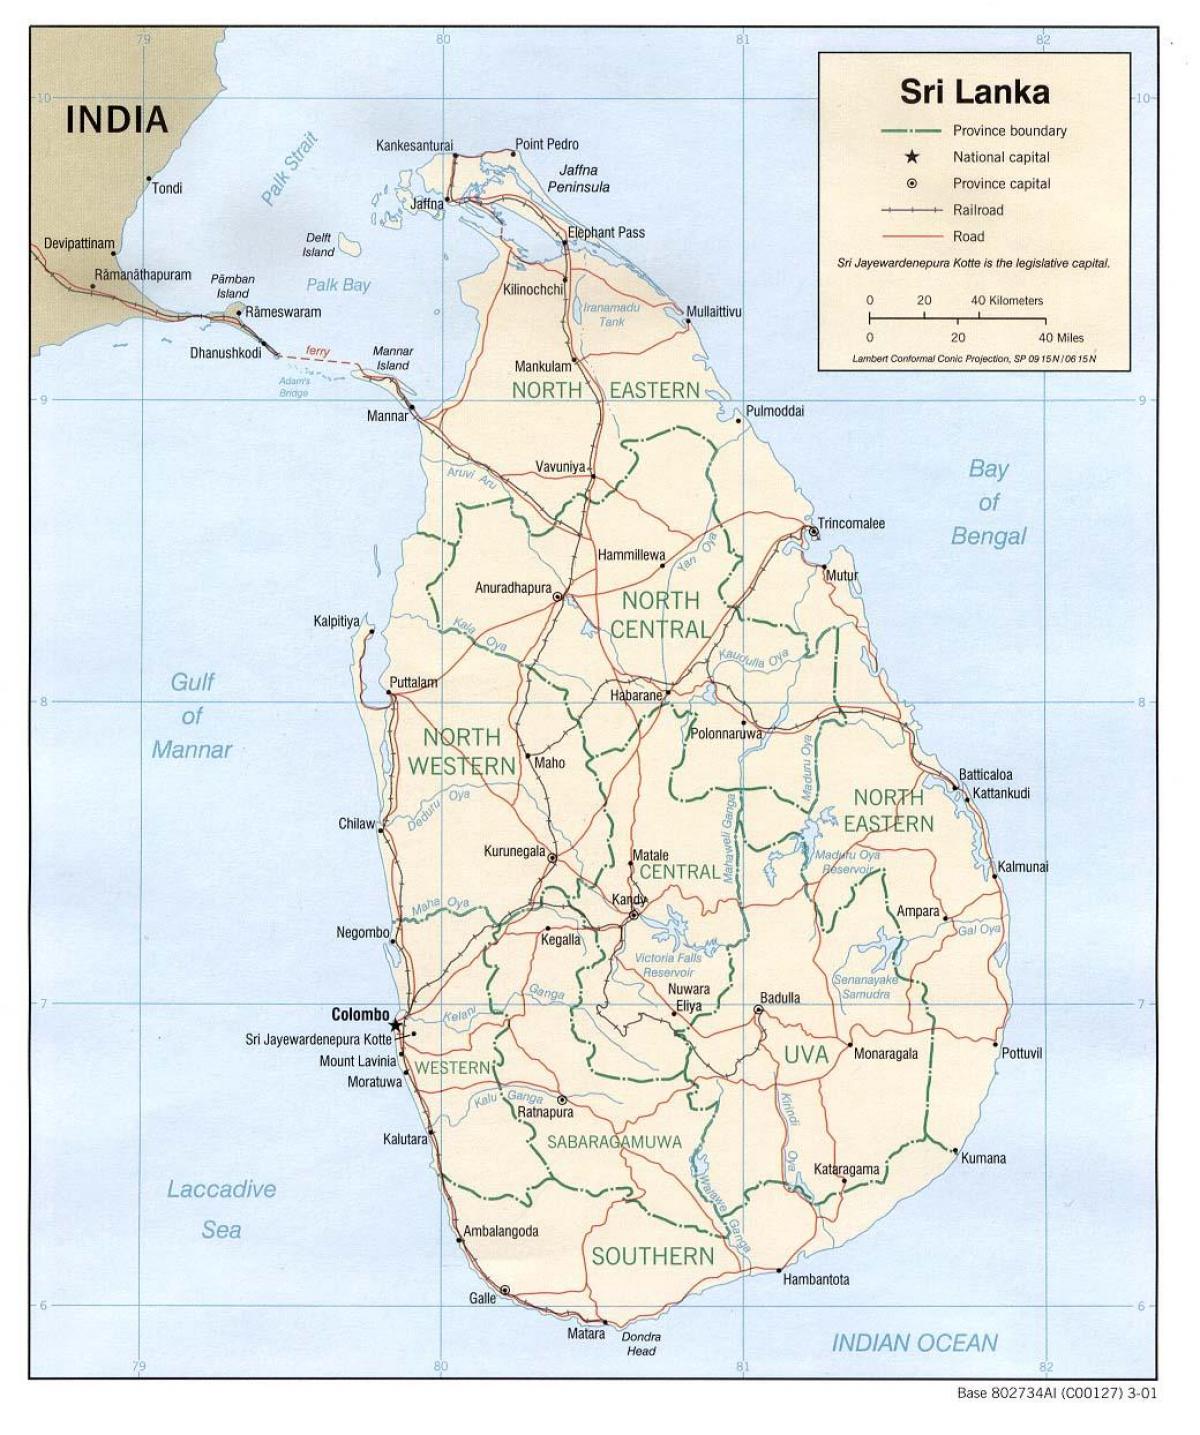 Sri Lanka bus kaart